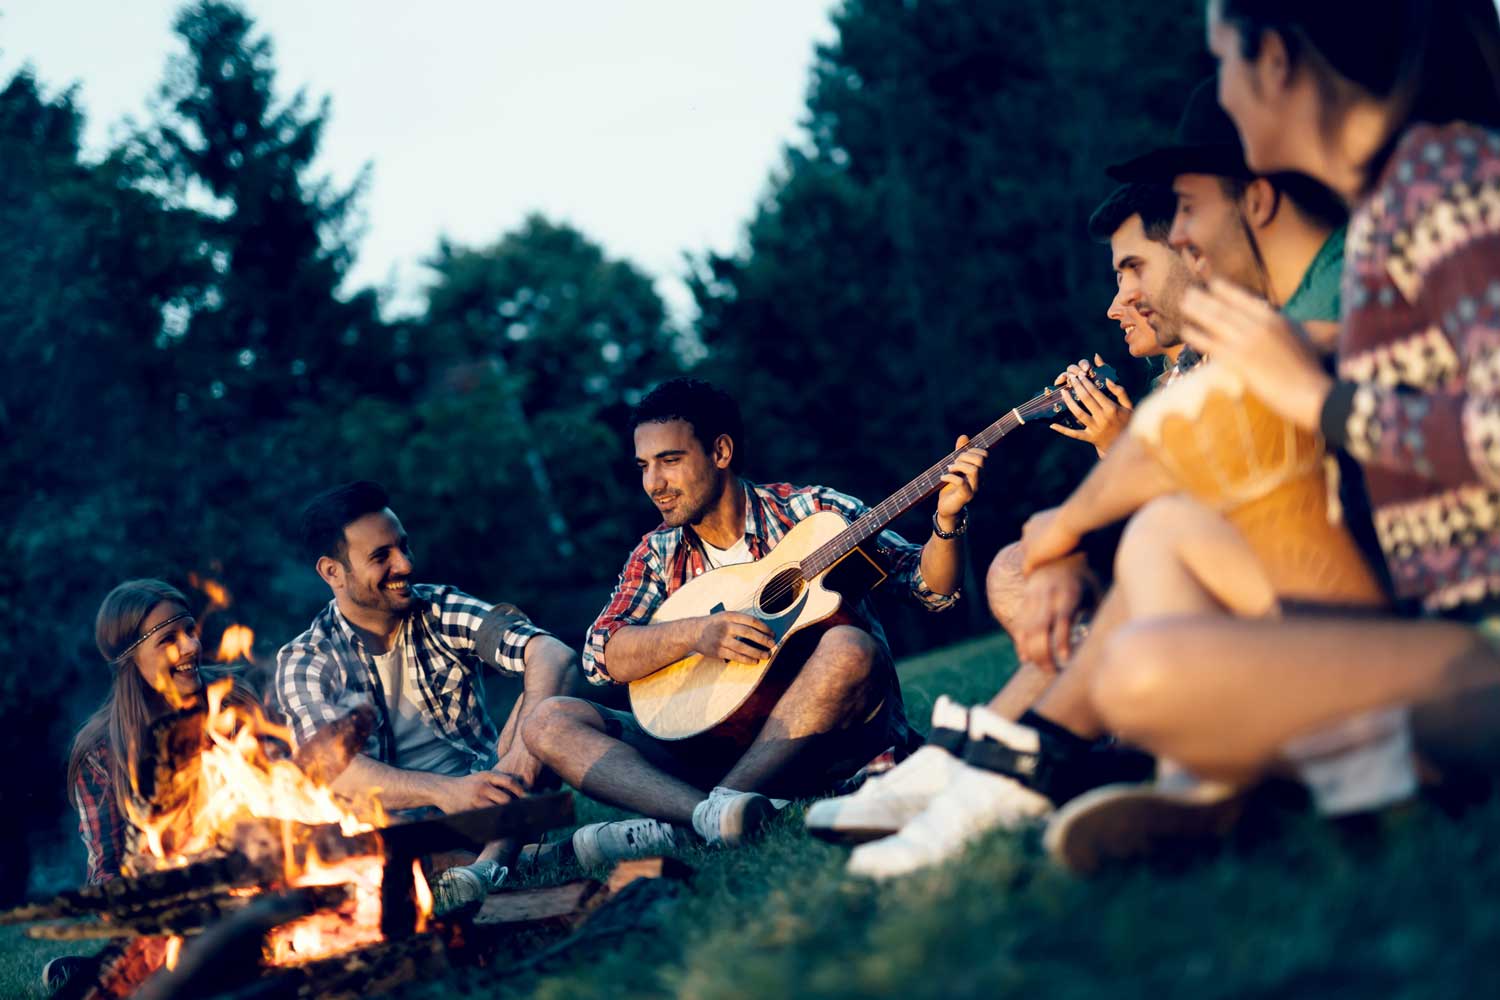 Friends around a campfire